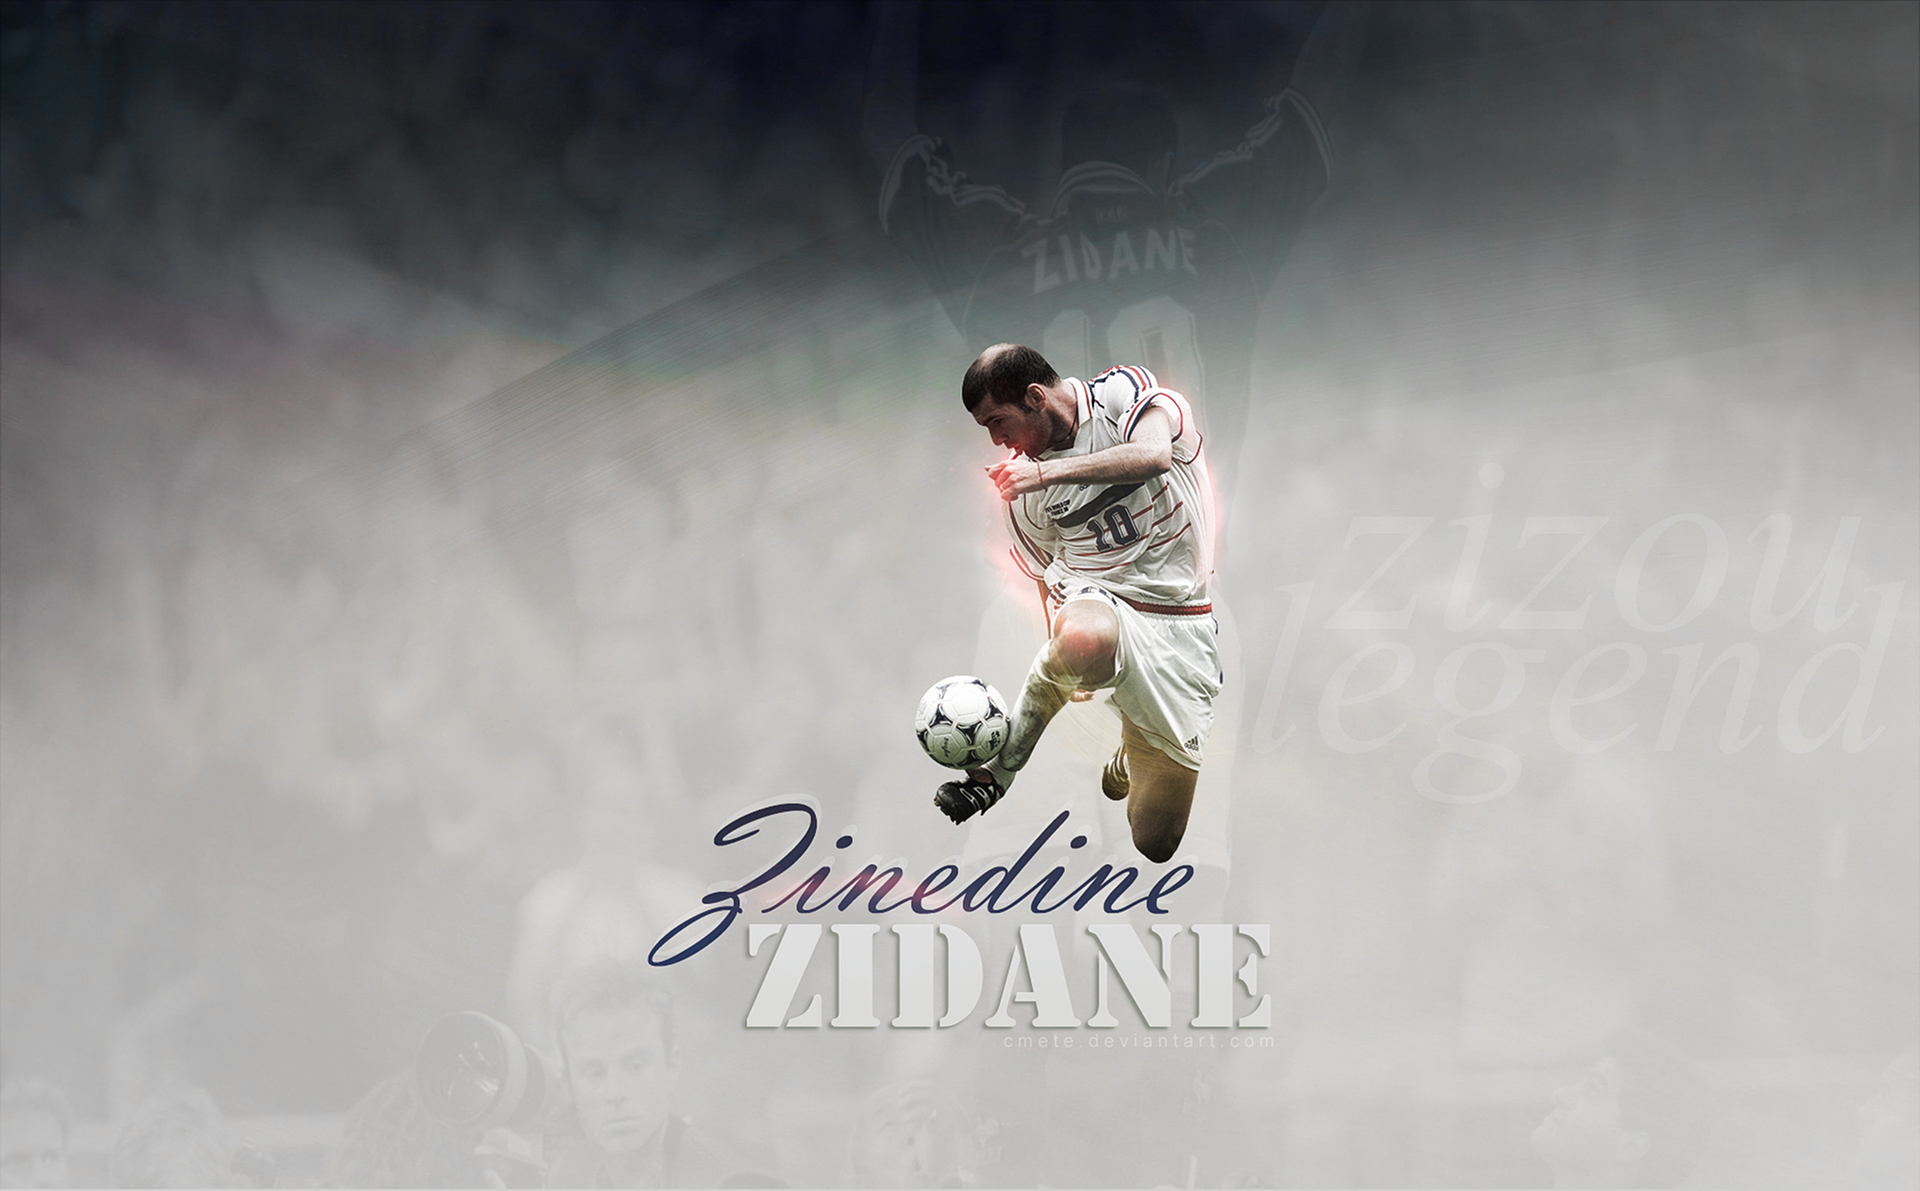 French Soccer Zinedine Zidane 1920x1191